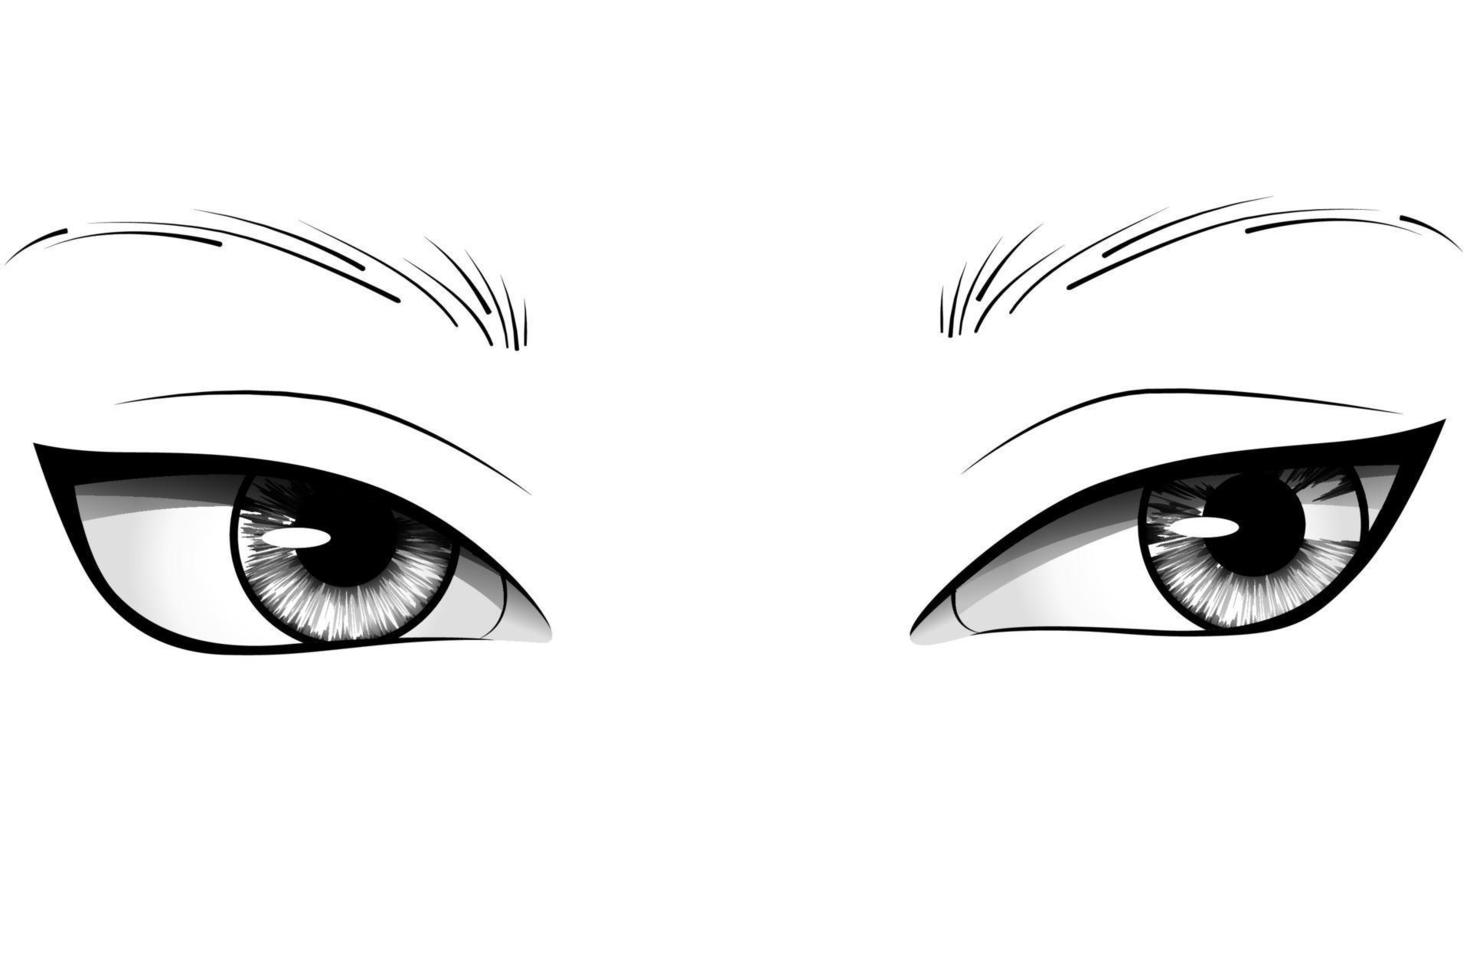 Ojos de mujer de dibujos animados dibujados a mano con iris detallado, cejas y pestañas. ilustración vectorial de tipografía vector